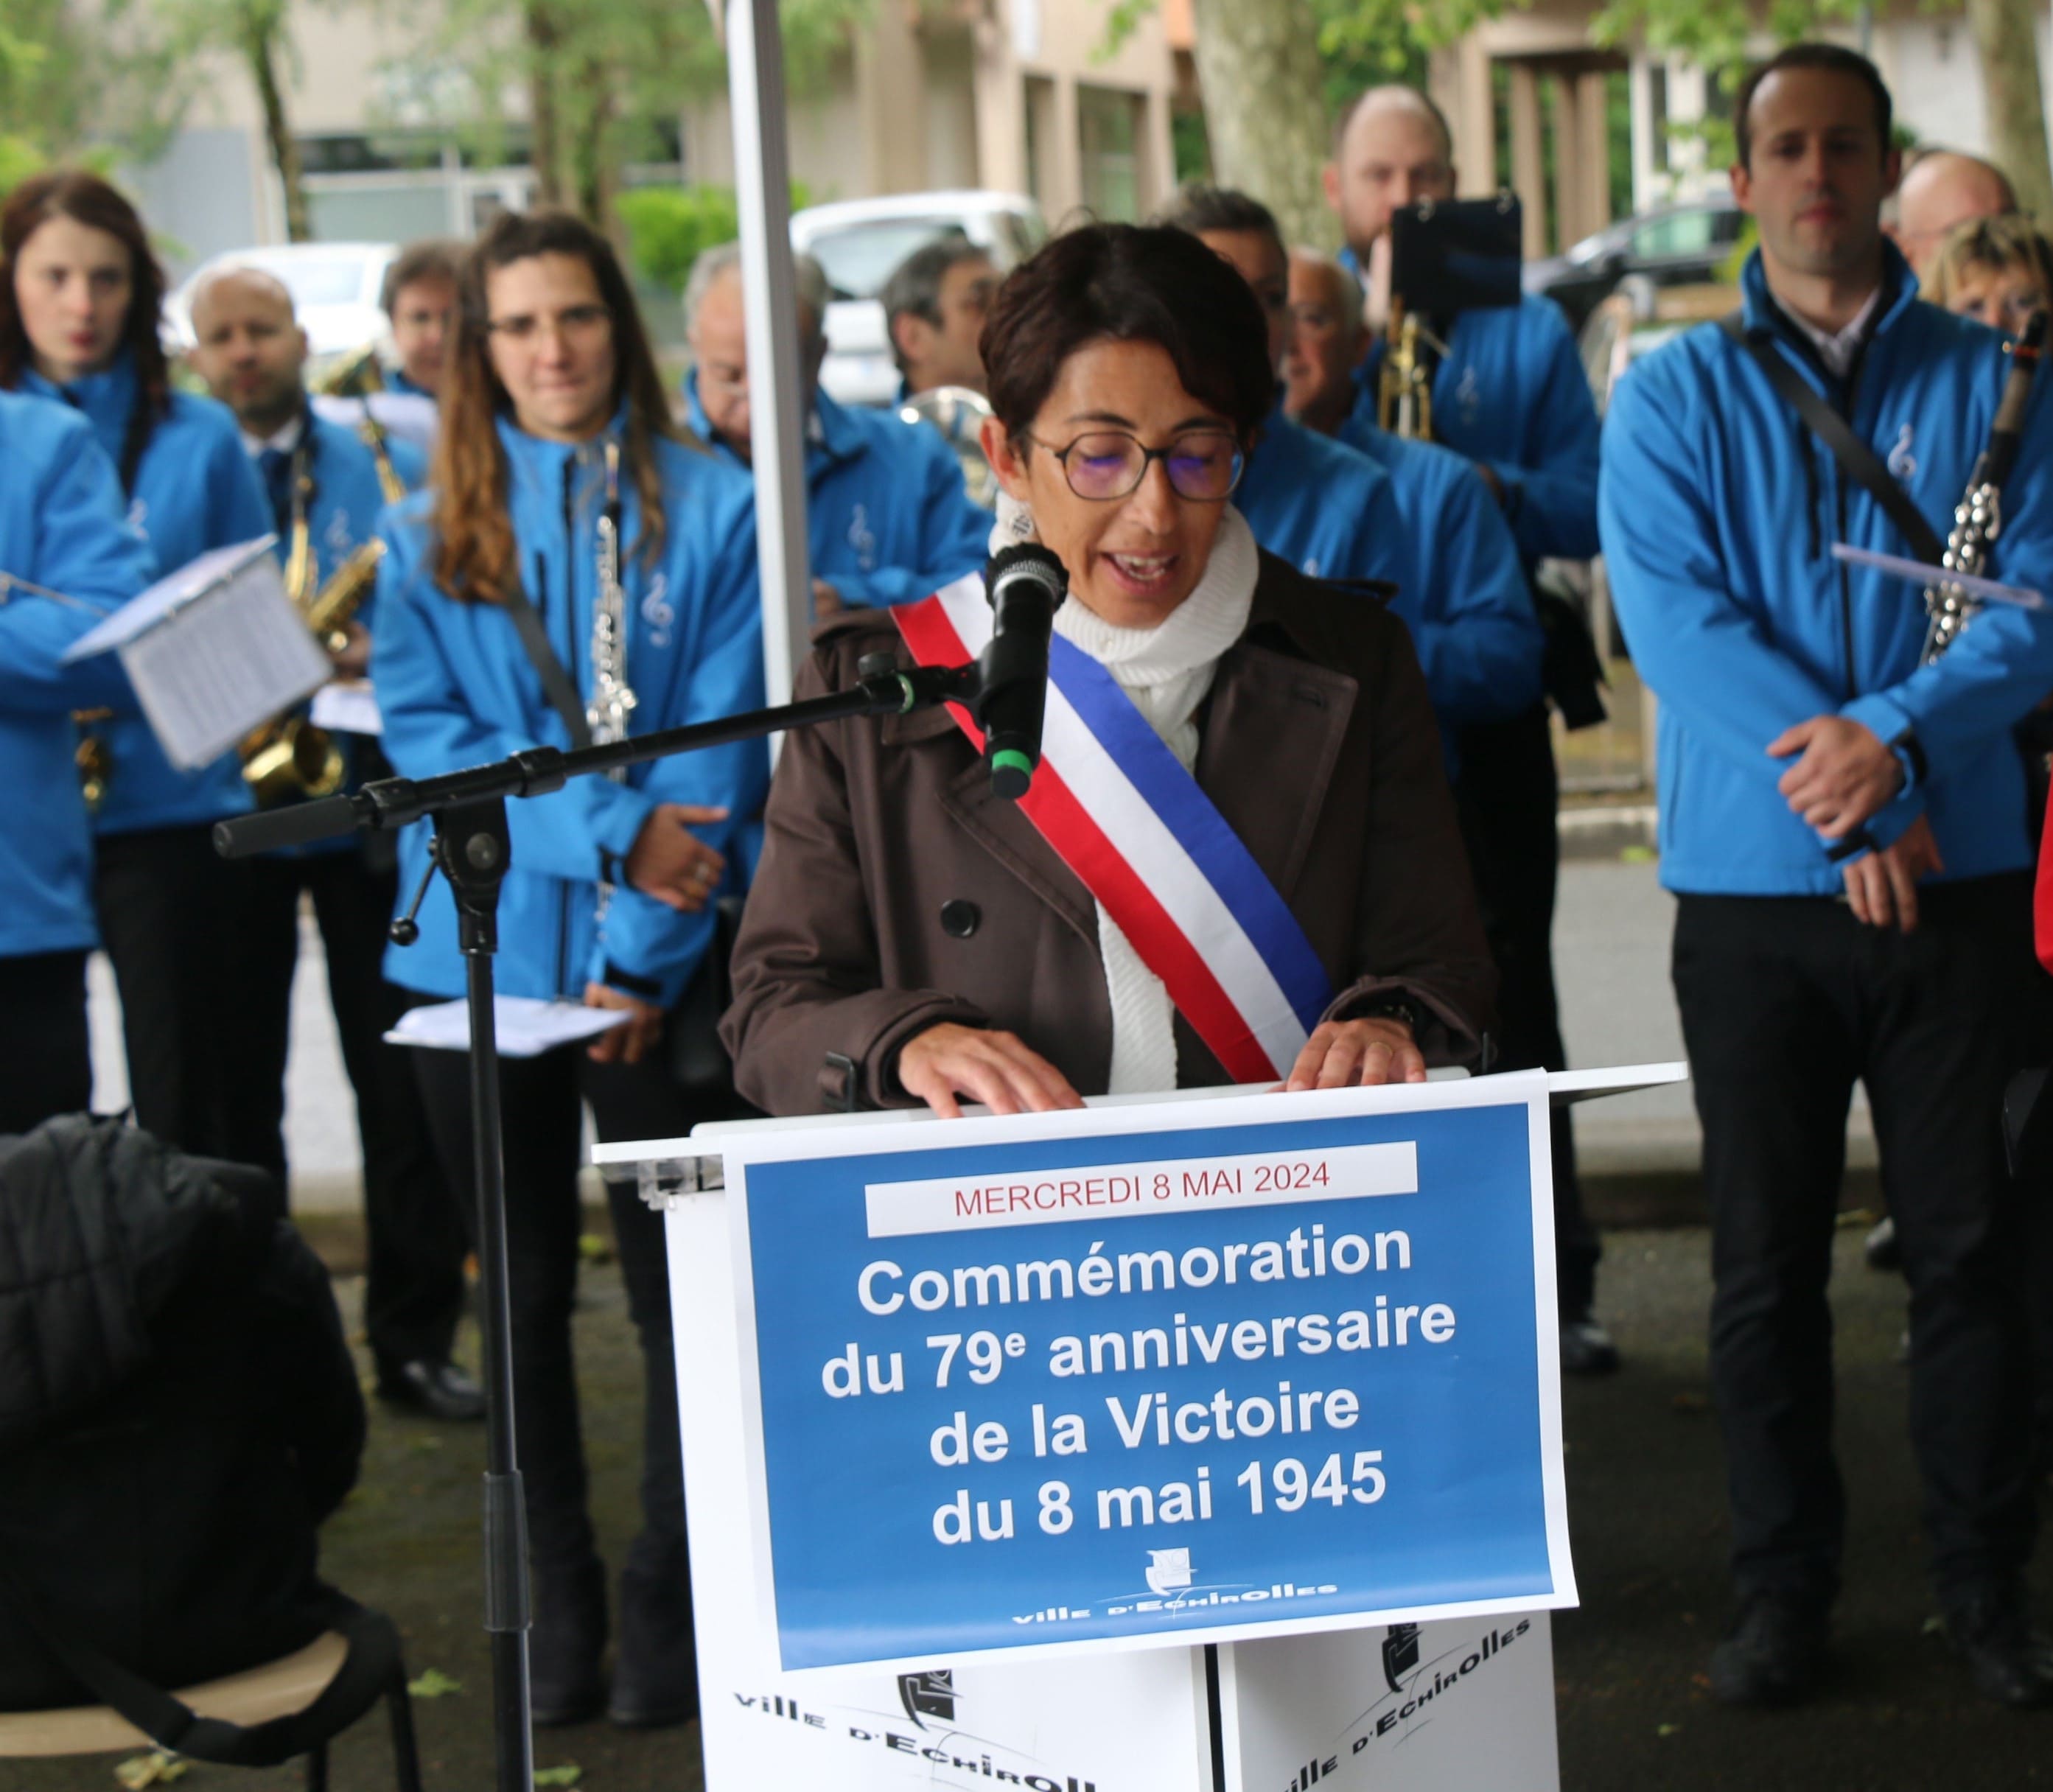 Discours de Madame la maire, Amandine Demore, qui porte un message pacifiste clair : plus jamais ça.